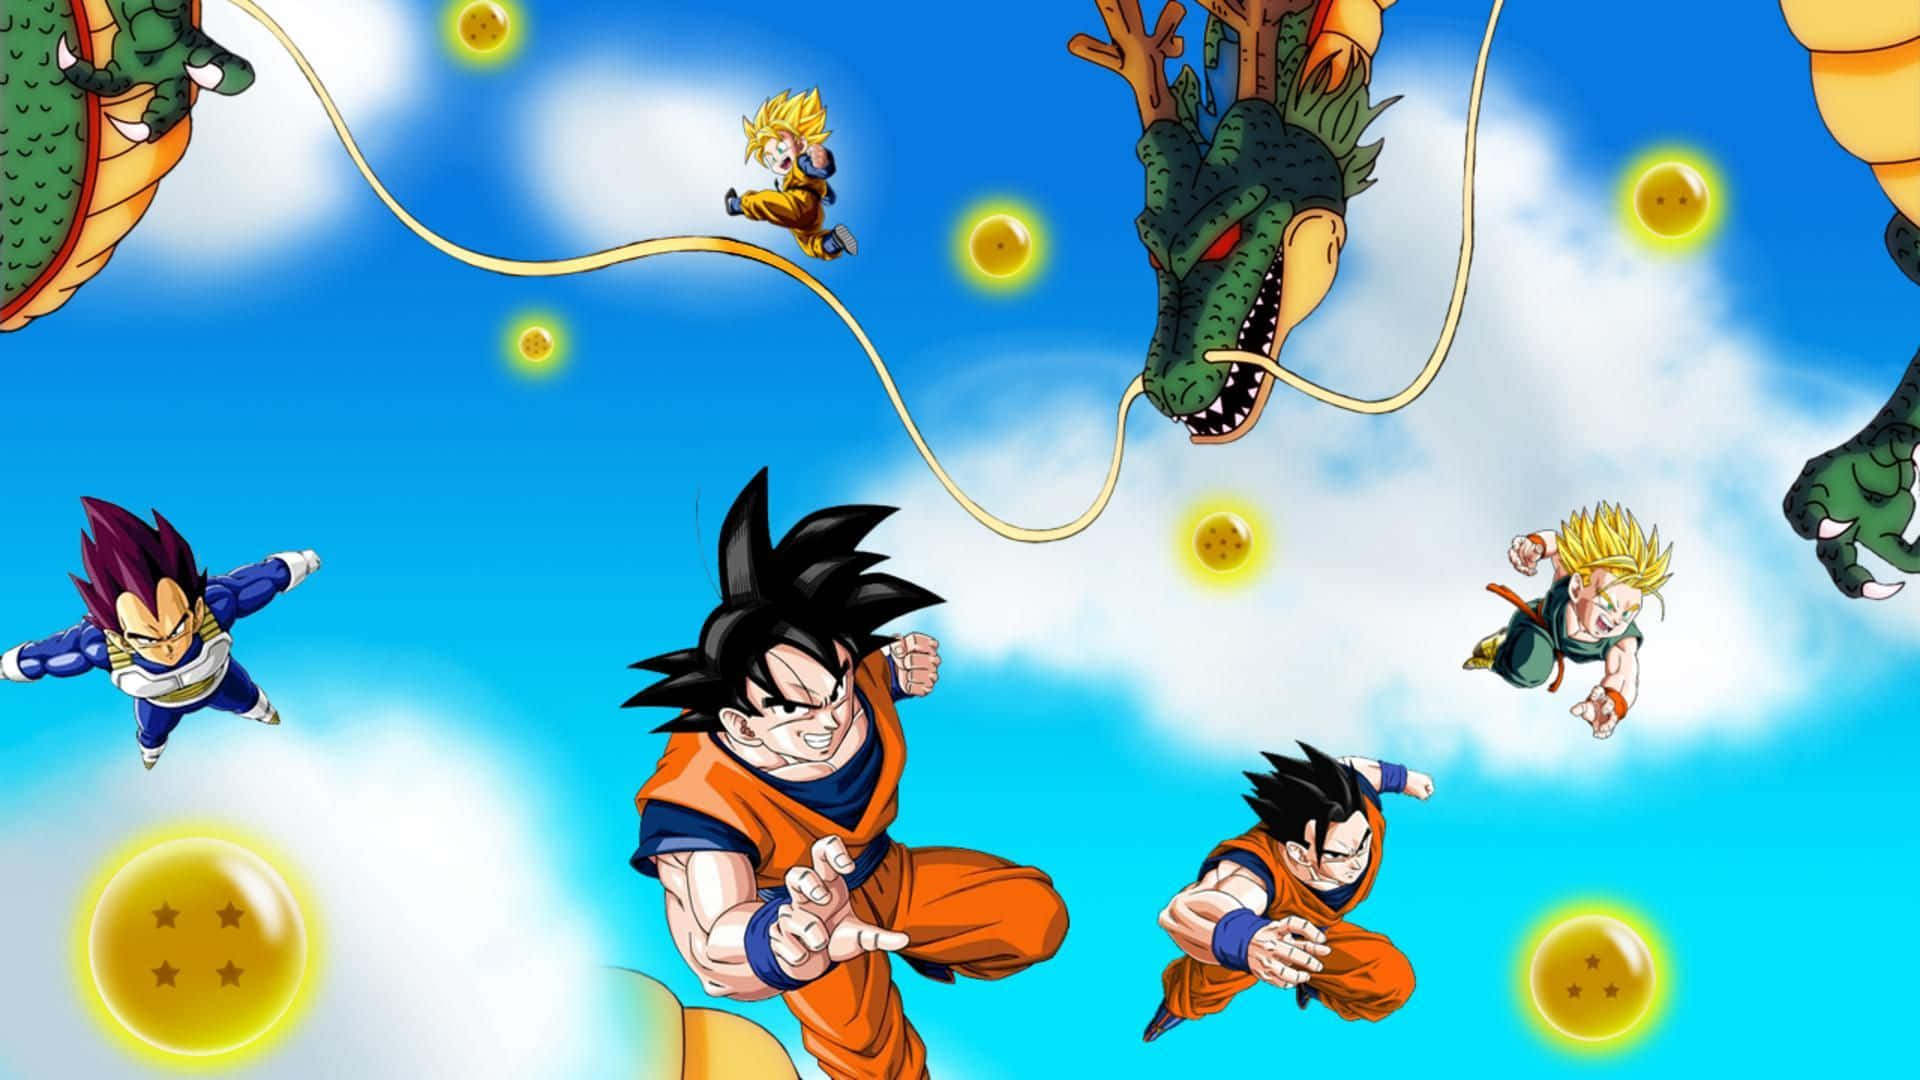 Imagemdo Goku Com A Família E Amigos.